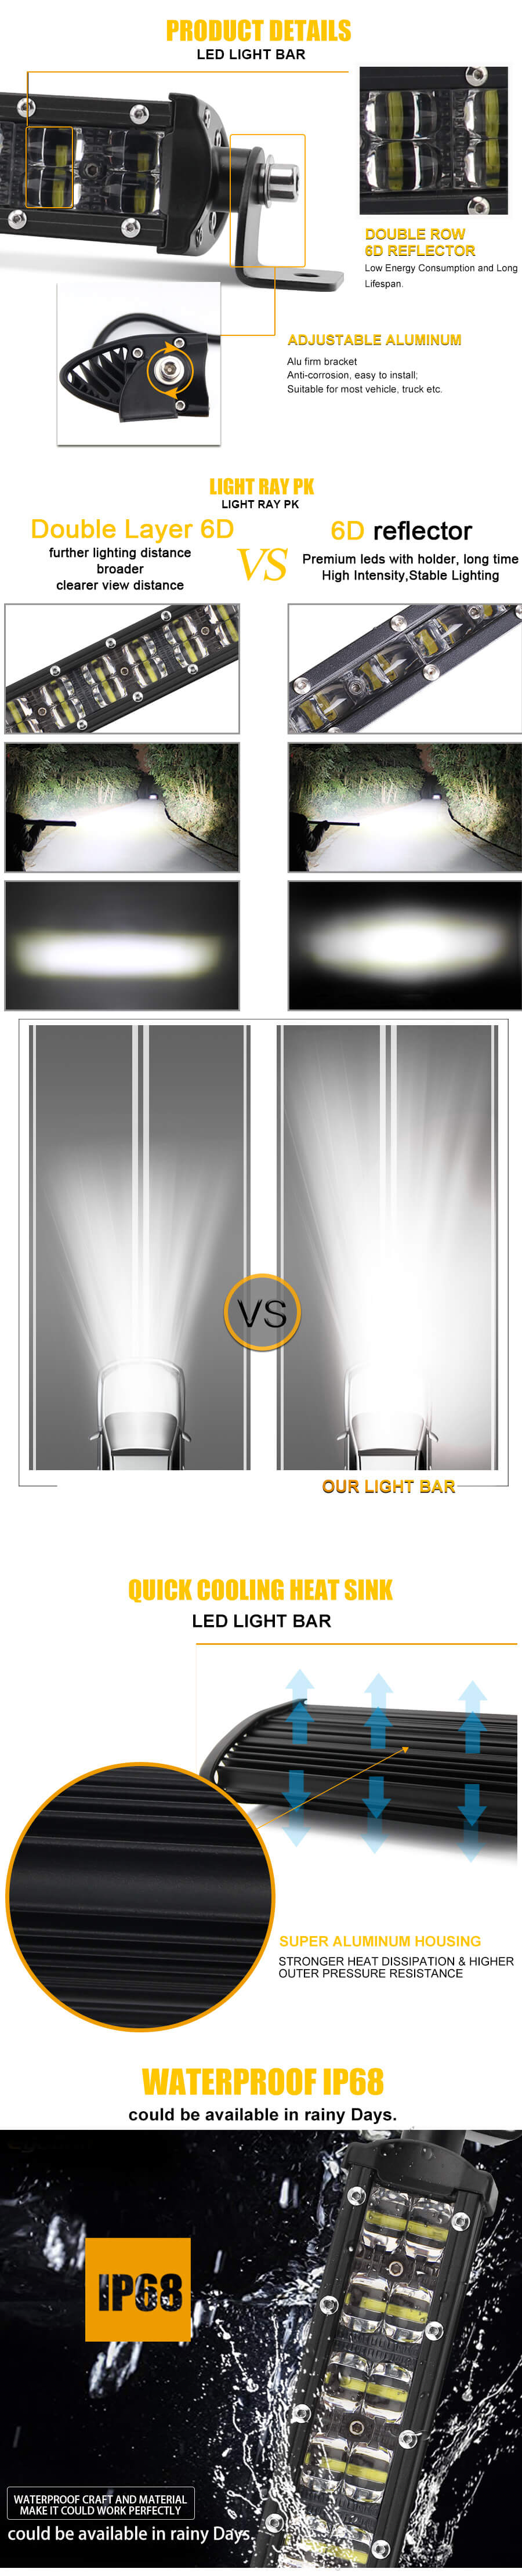 Super Bright Dual Rows Offroad Light Bar JG-9620A advantages